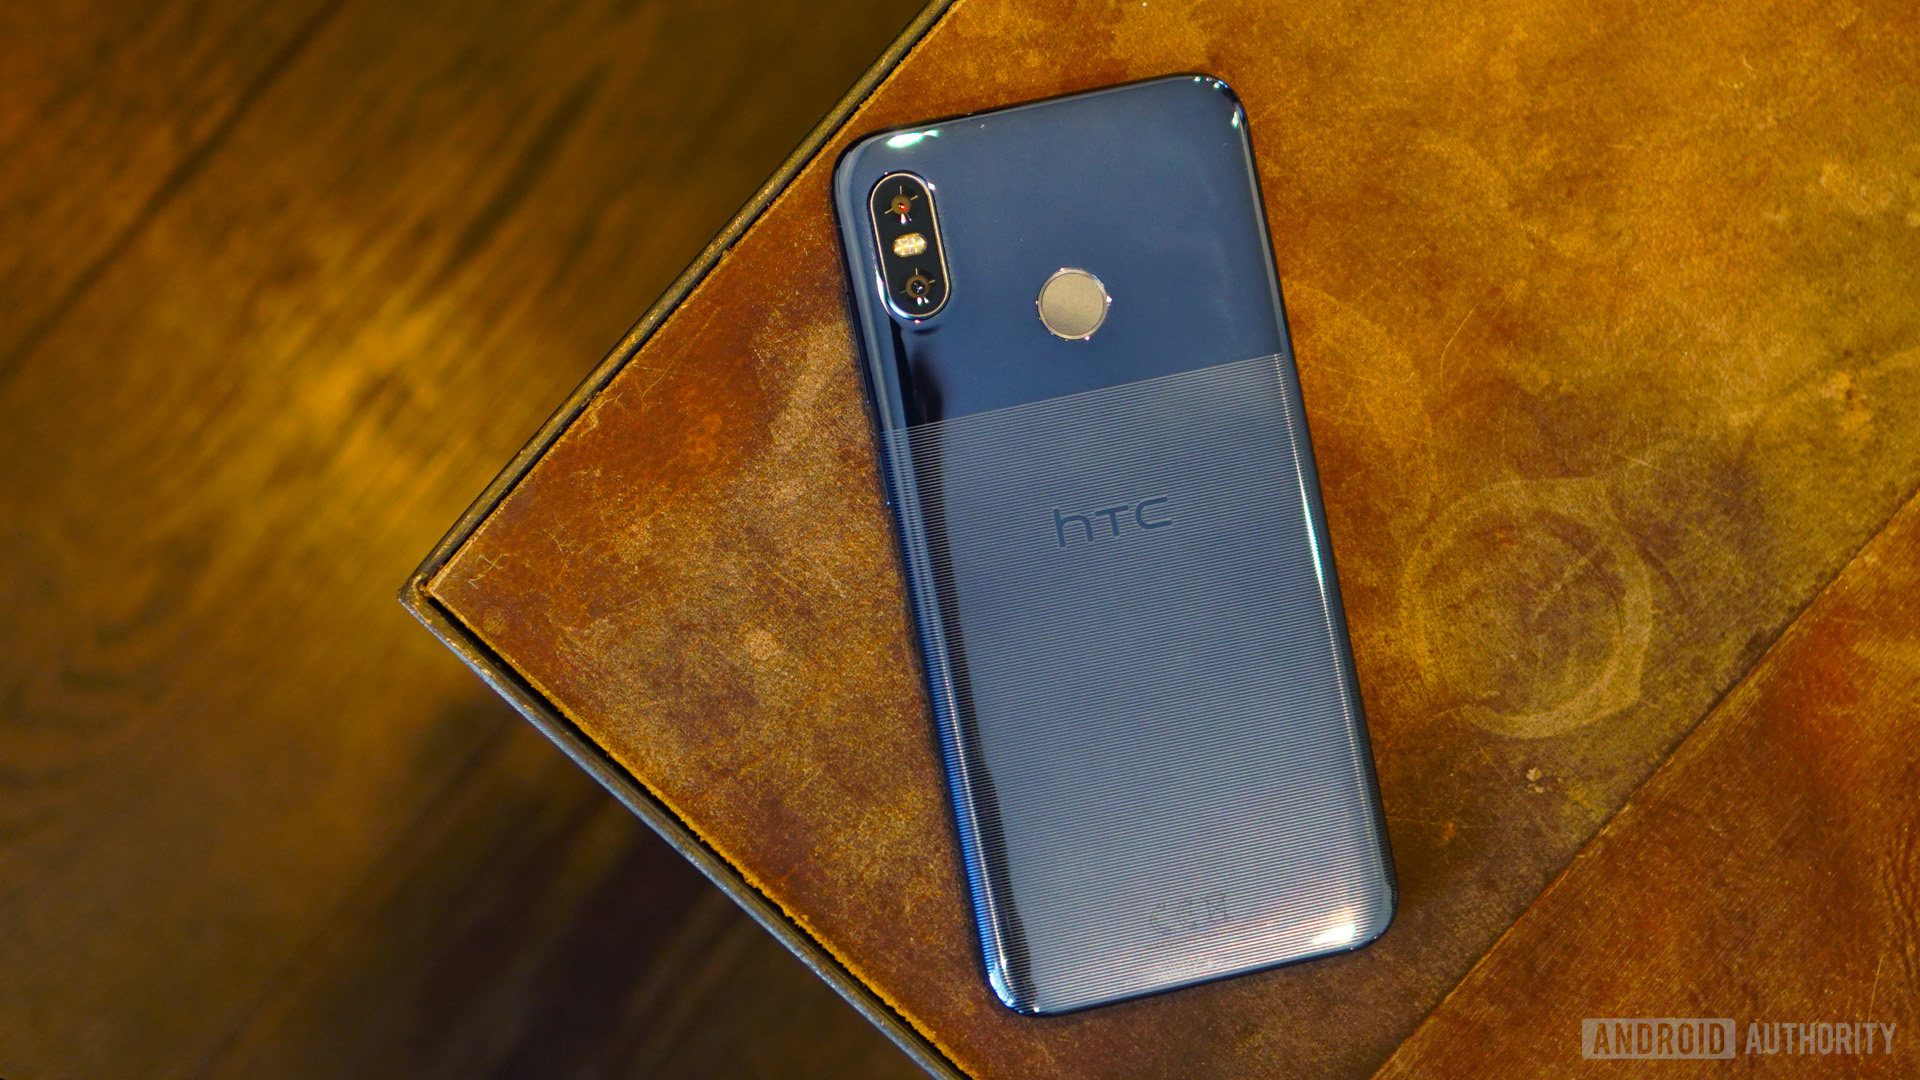 HTC in 2019: HTC U12 Life